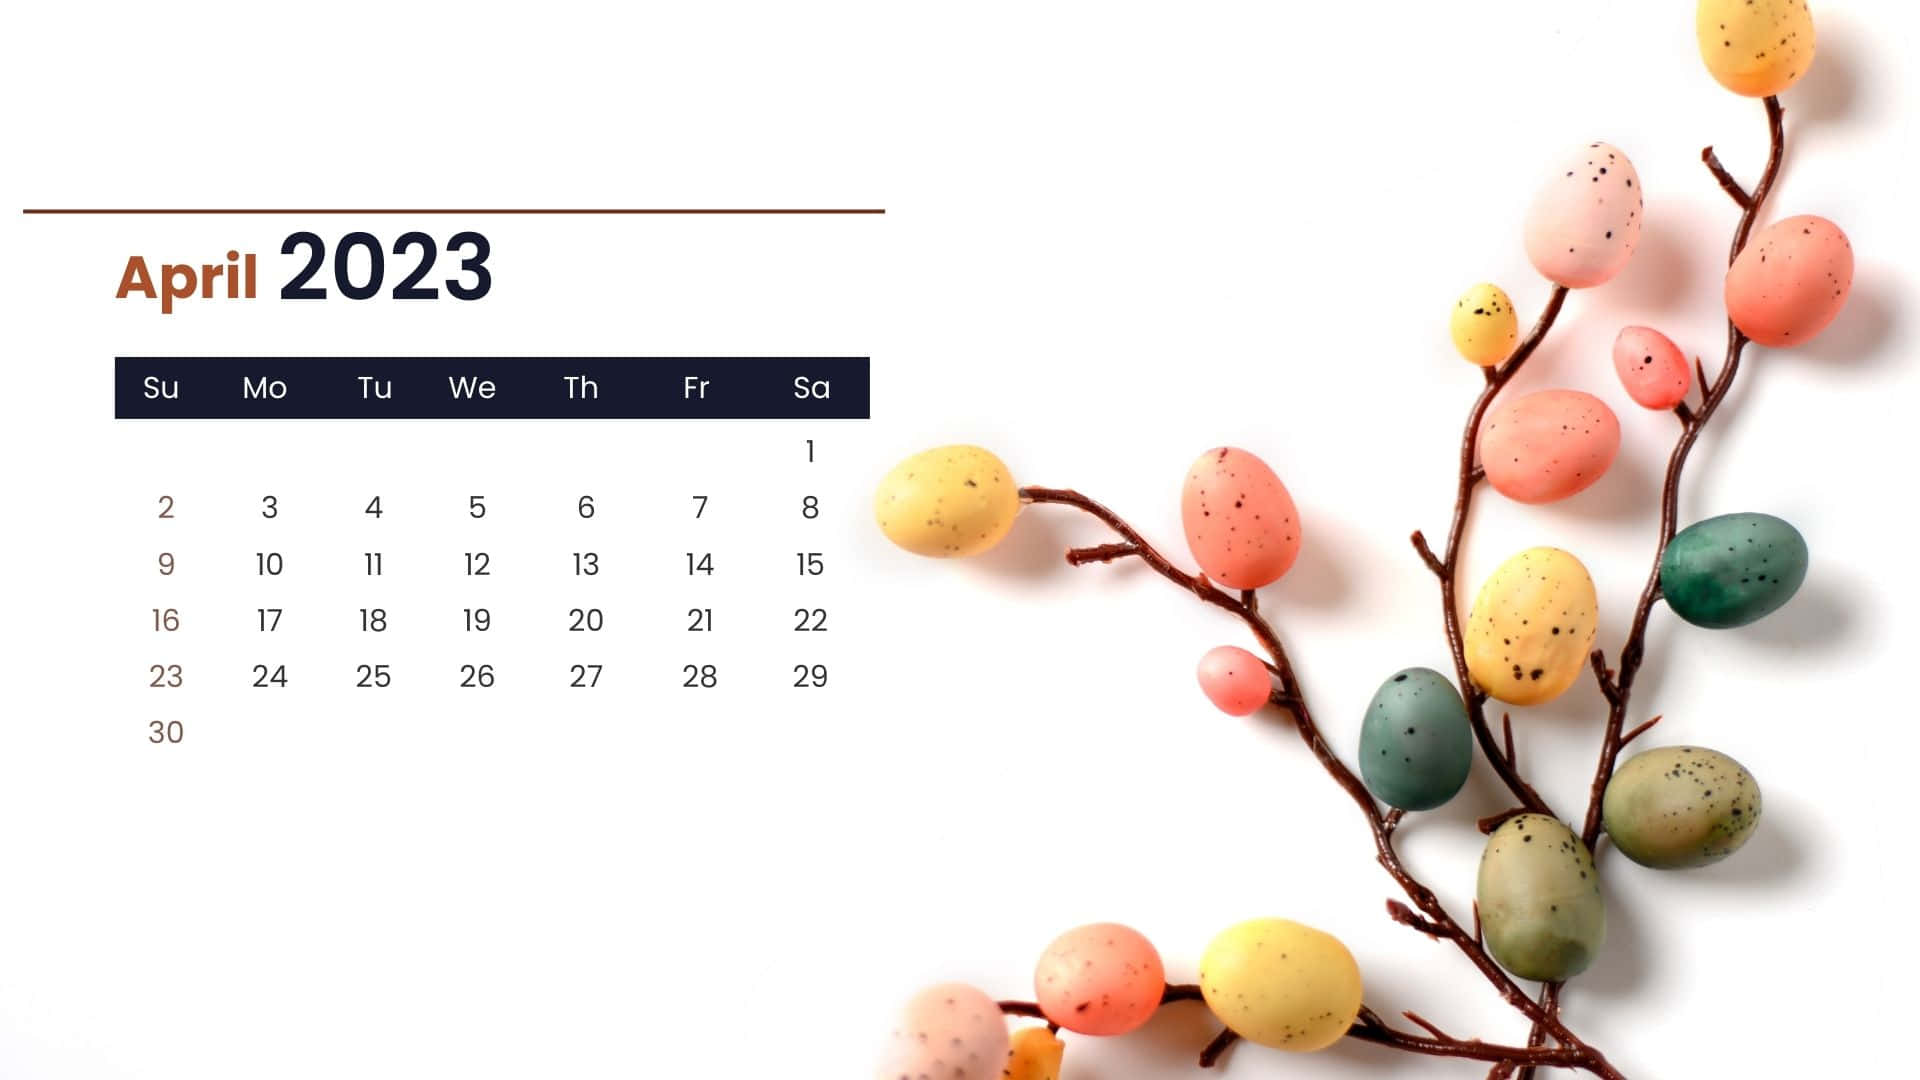 April 2023 Calendar Backgrounds For Desktop  PixelsTalkNet